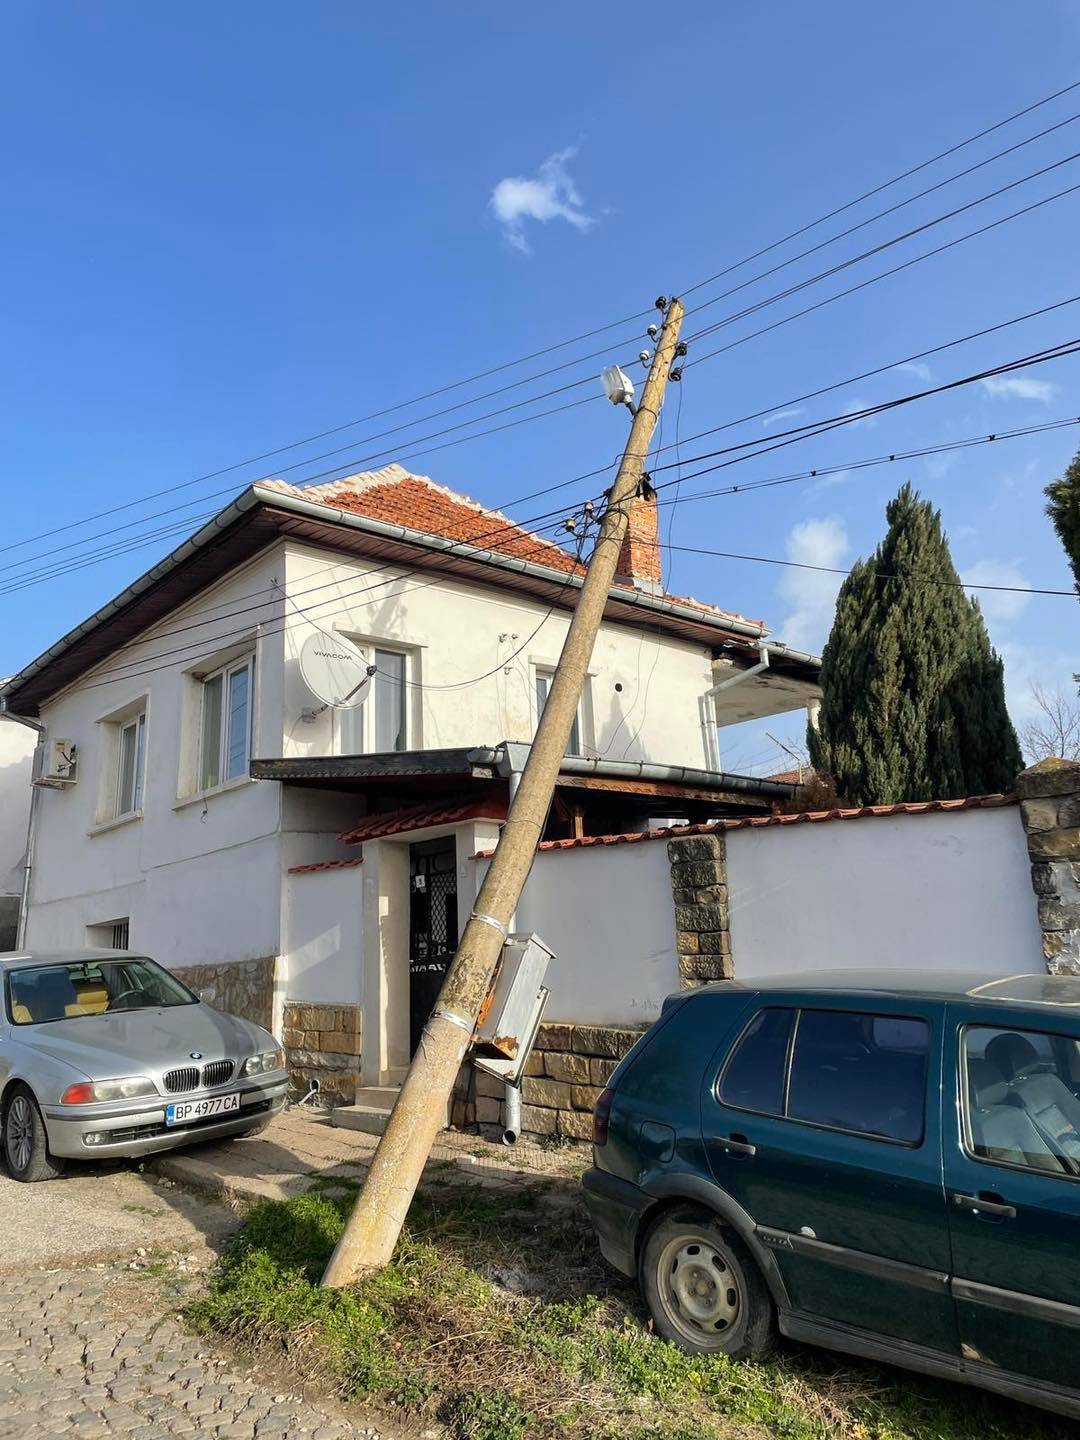 Обявено е бедствено положение за територията на община Враца